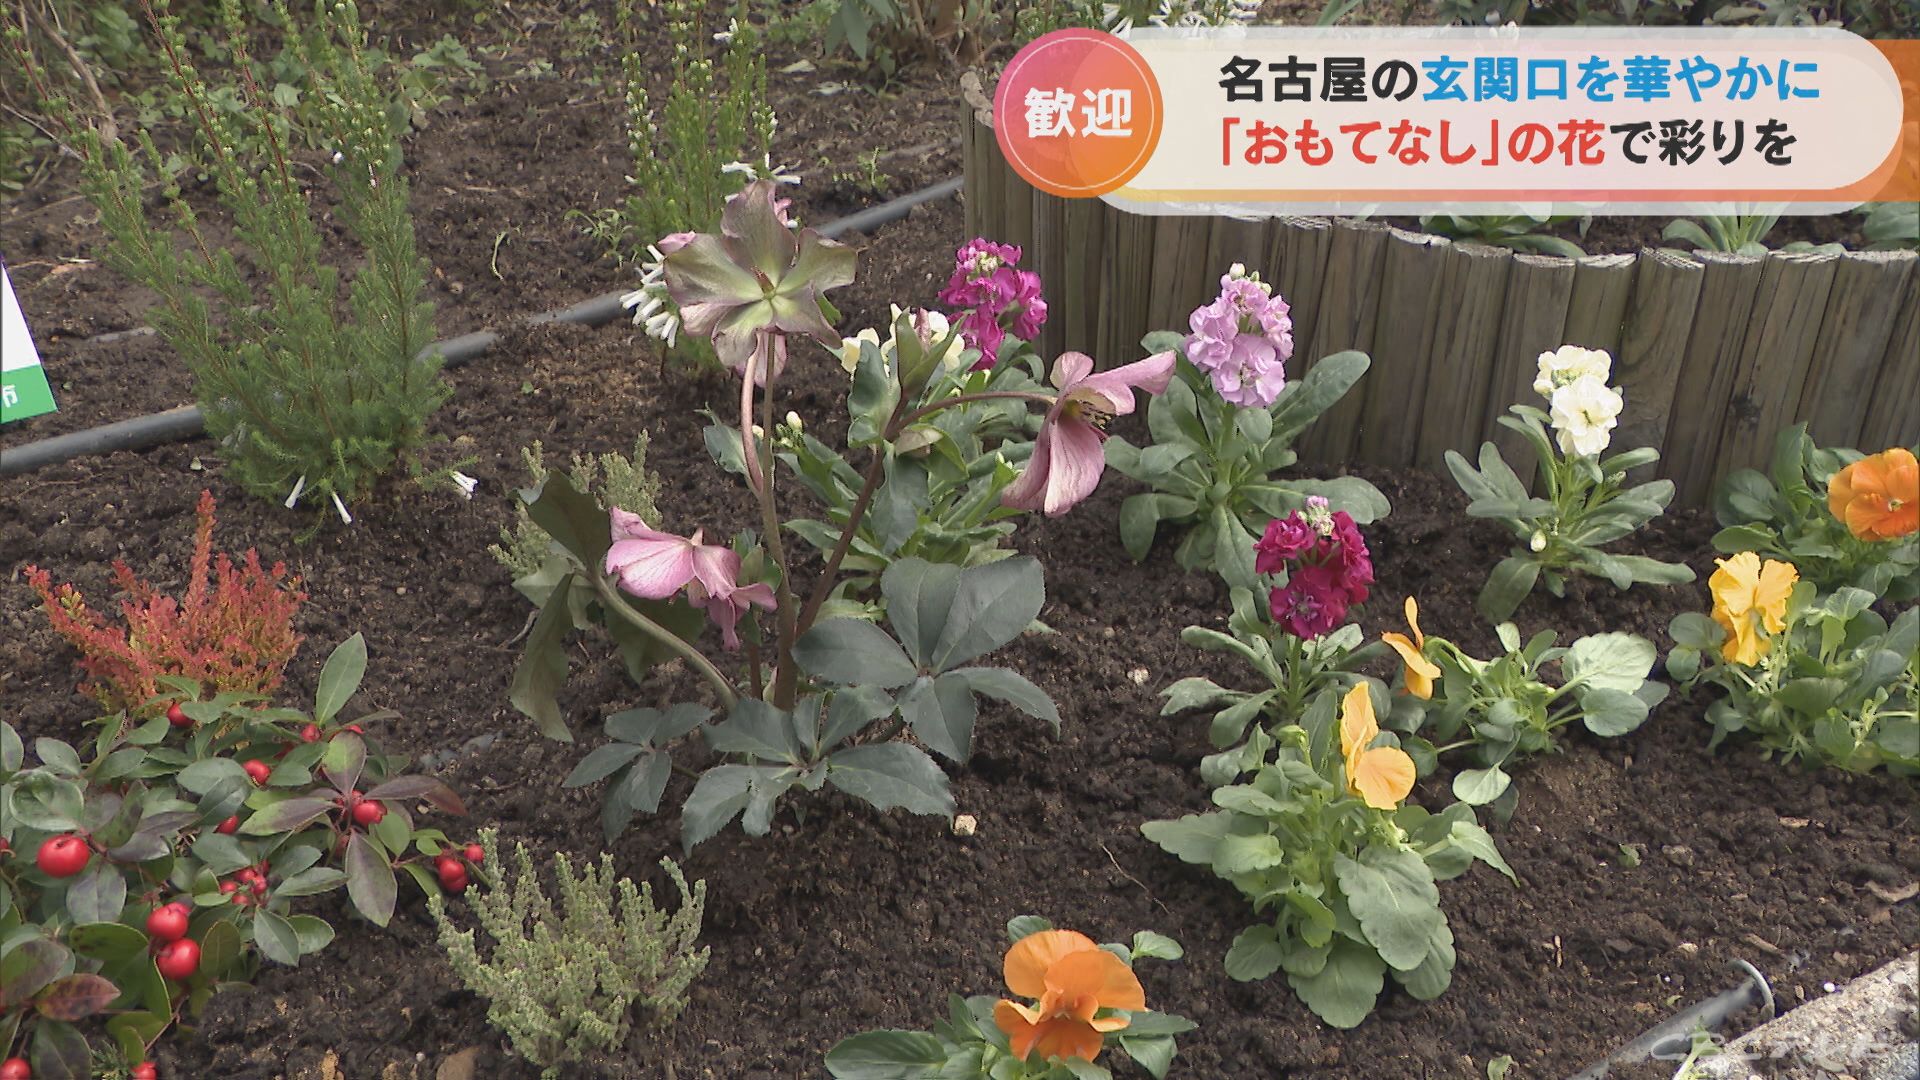 名古屋の玄関口を華やかに　駅前の「おもてなし花だん」で花の植え替え作業